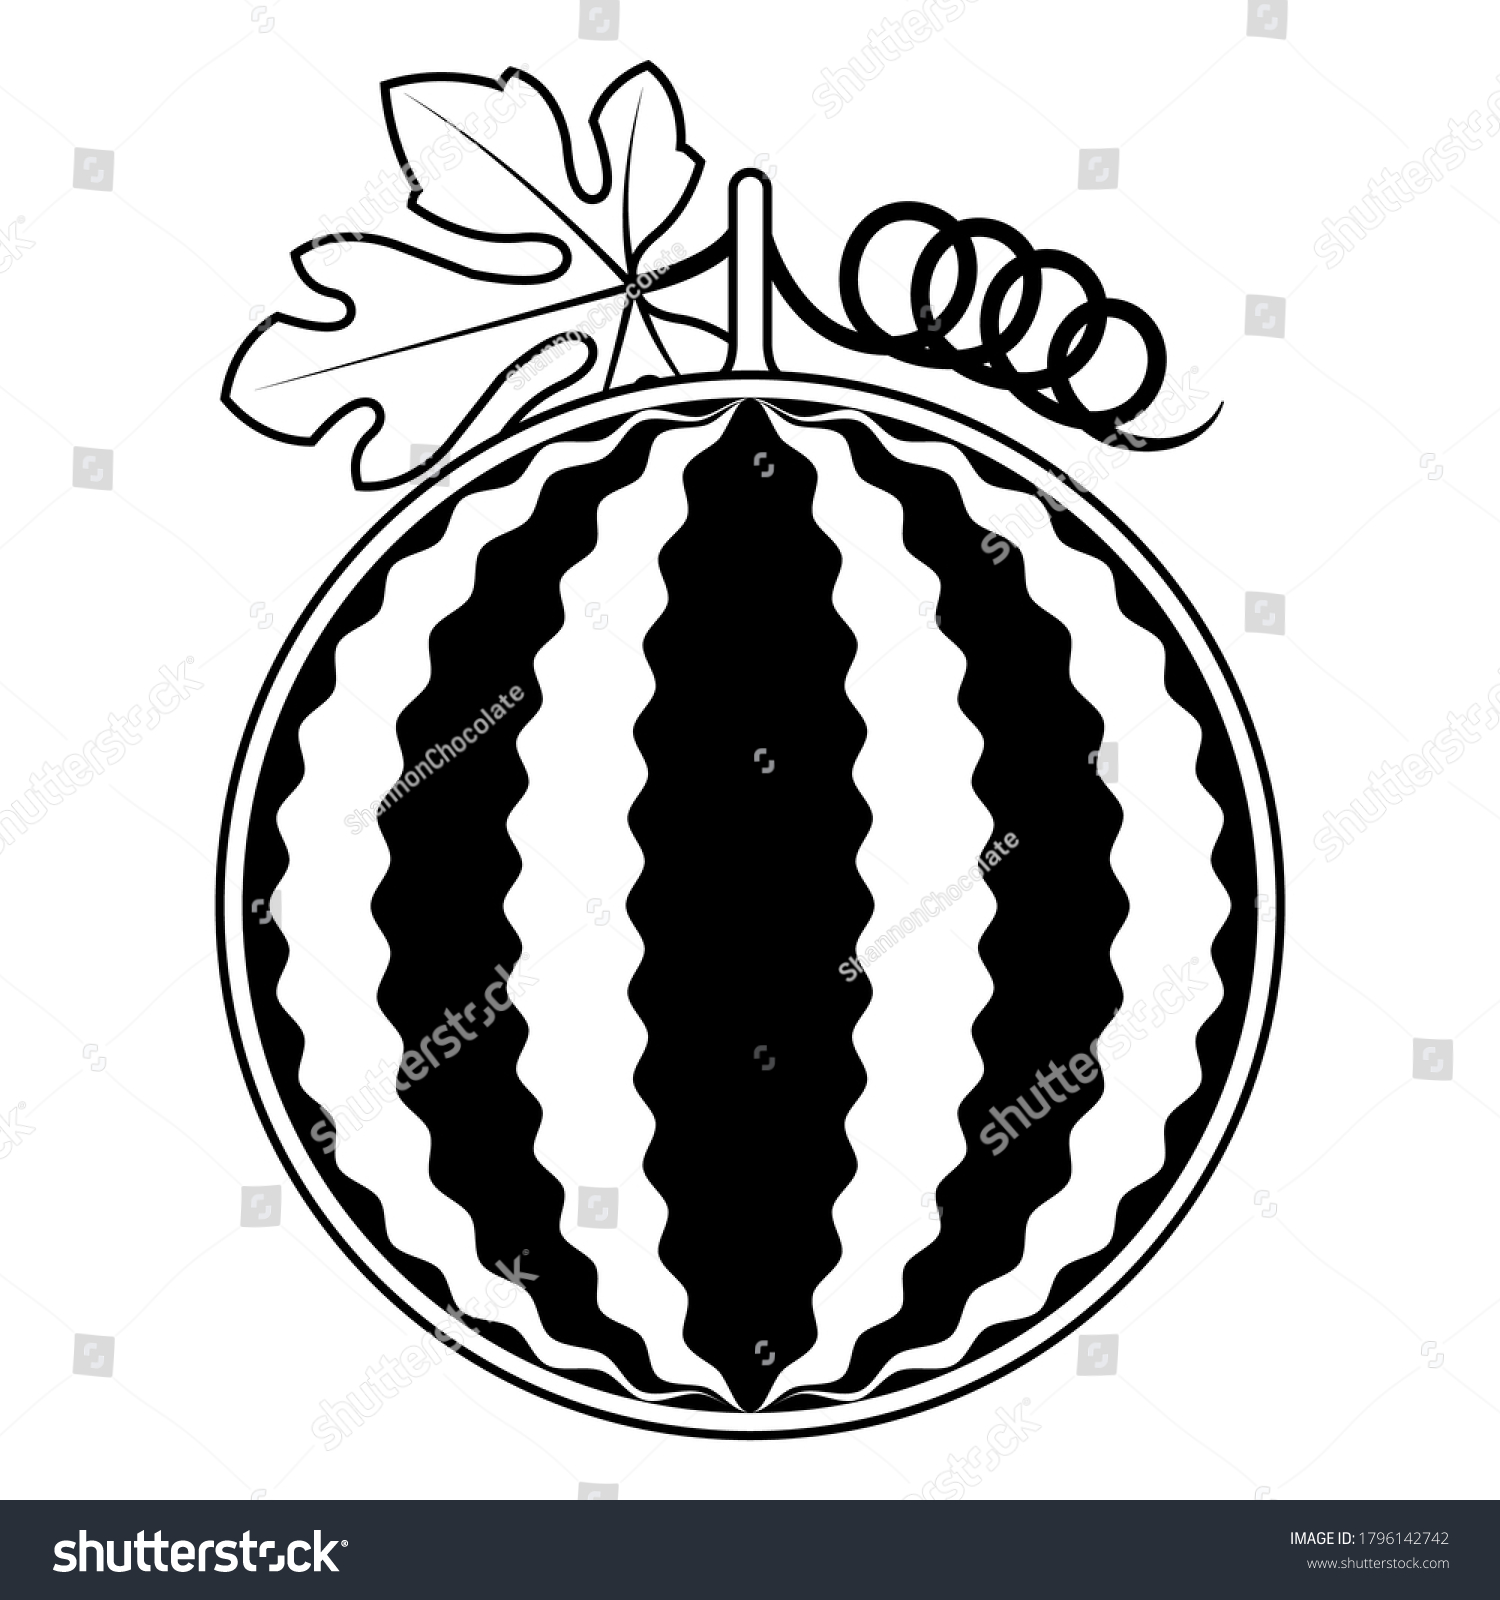 白い背景に2dフルーツベクター画像 白黒のスイカのフルーツシルエット フルーツアイコンイラスト のベクター画像素材 ロイヤリティフリー